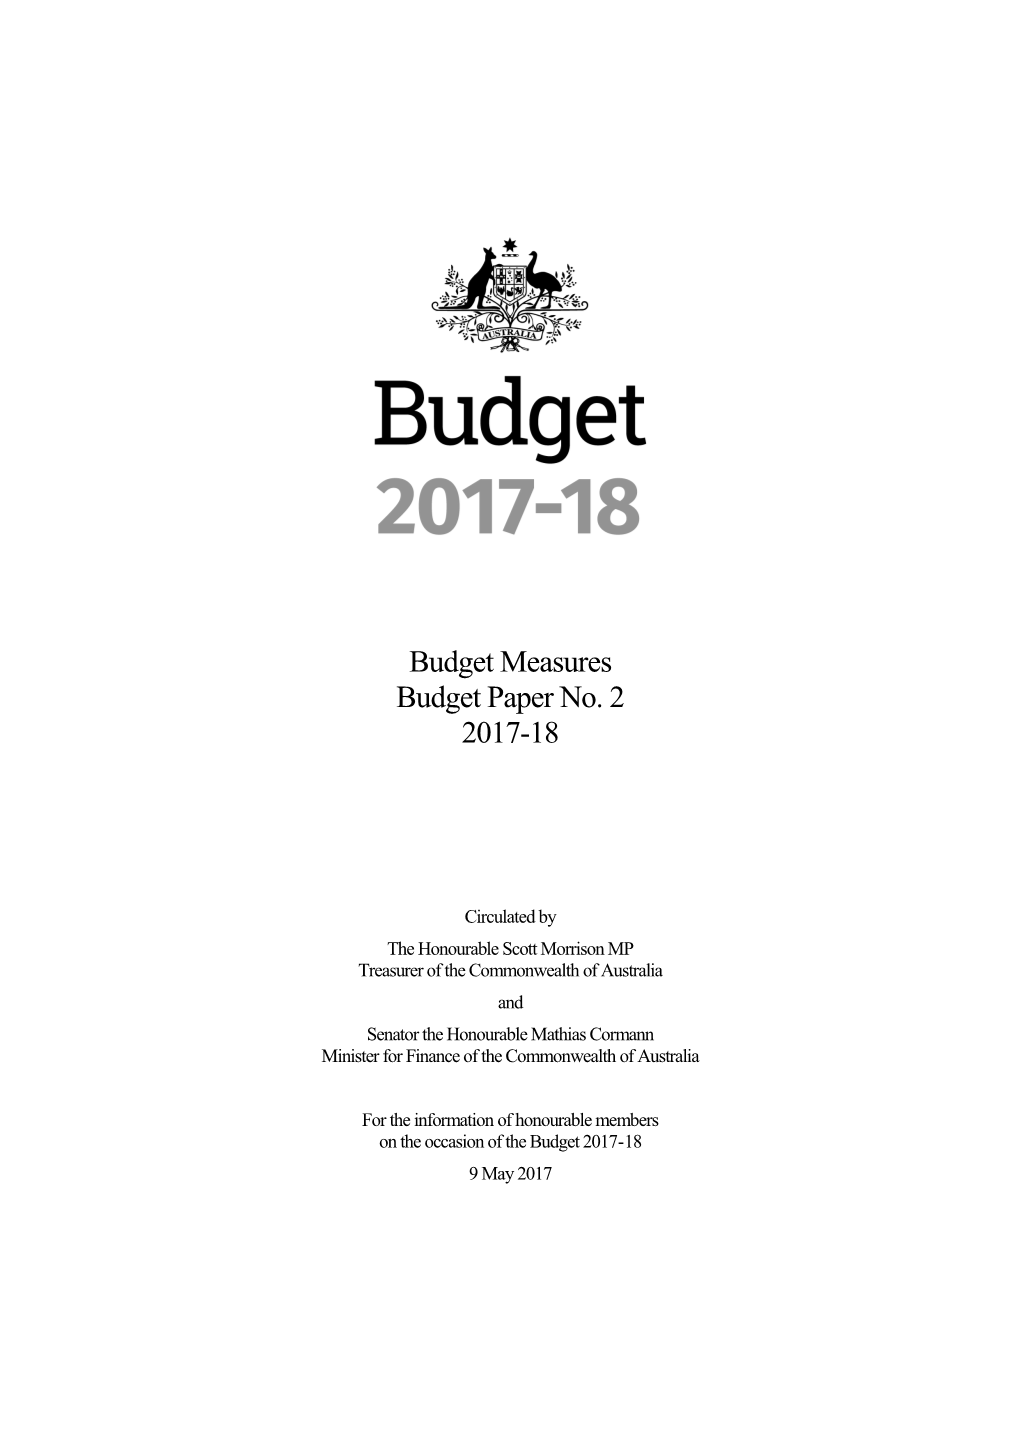 Budget 2017-18 - Budget Measures Budget Paper No. 2